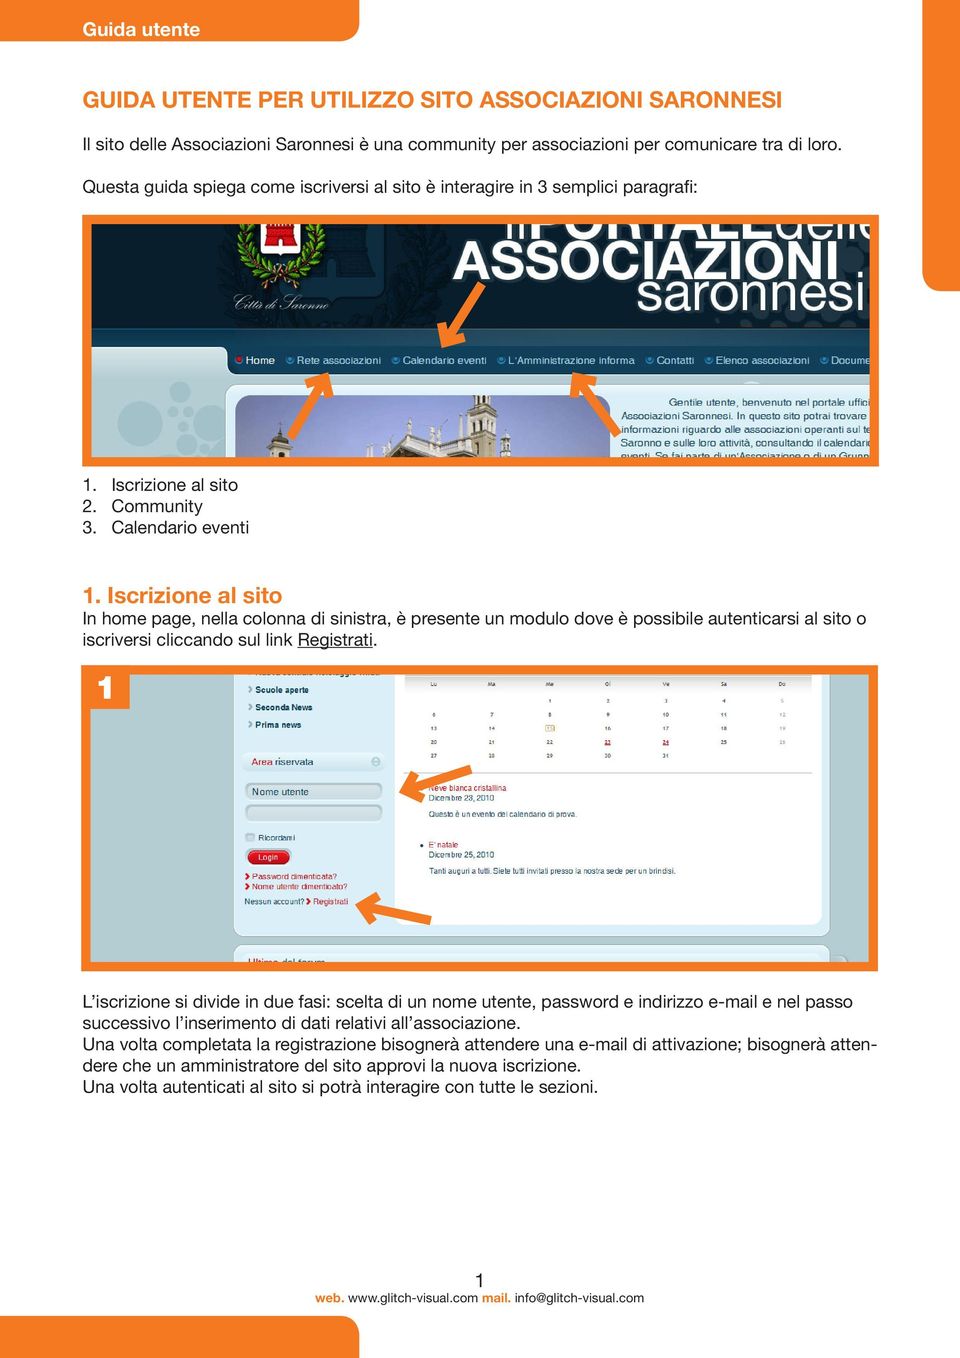 Iscrizione al sito In home page, nella colonna di sinistra, è presente un modulo dove è possibile autenticarsi al sito o iscriversi cliccando sul link Registrati.